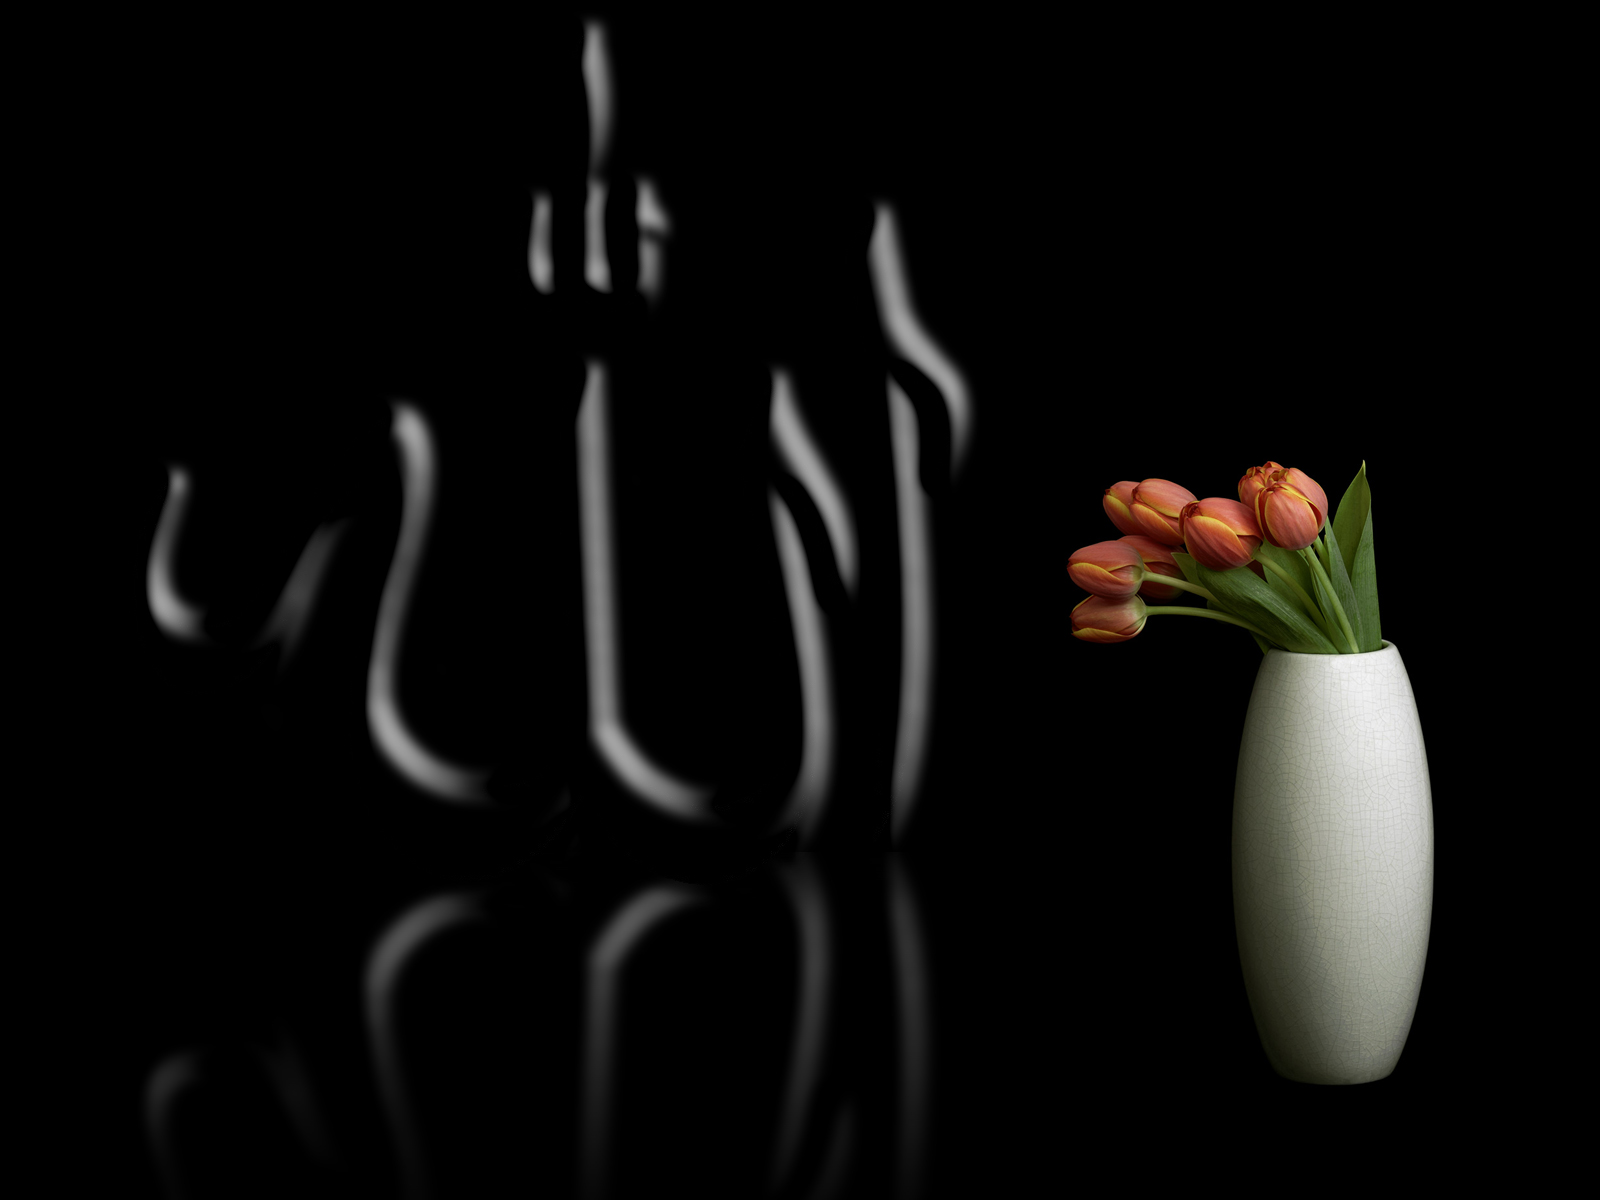 sfondi immagini allah,fotografia di still life,nero,pianta,fotografia,vaso